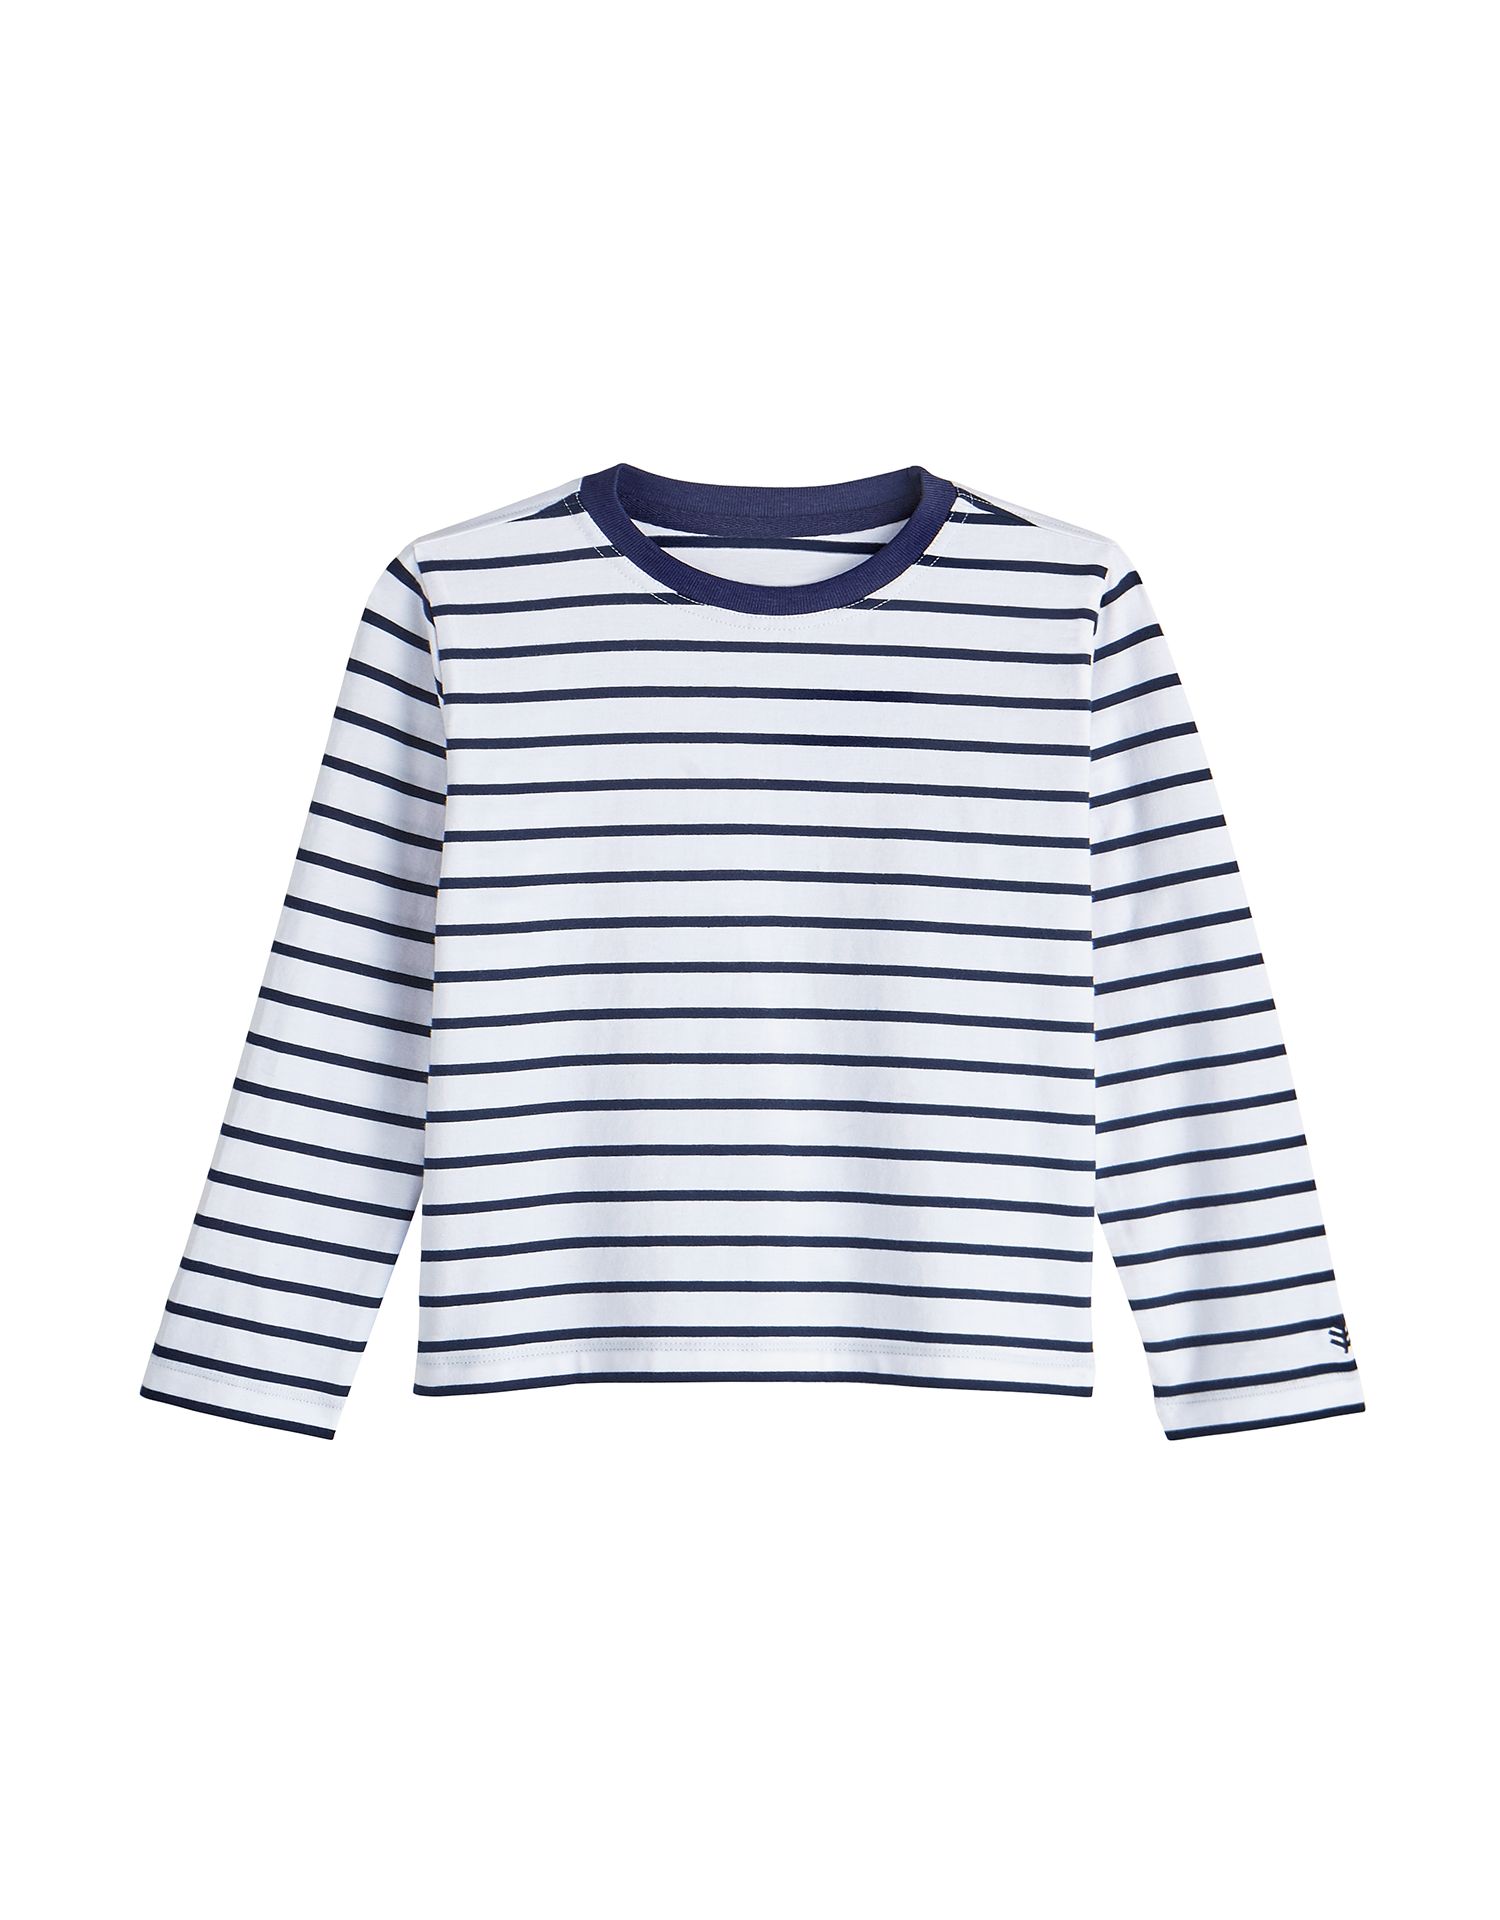 Coolibar - UV Shirt für Kleinkinder - Langarmshirt - Coco Plum - Weiß/Navy